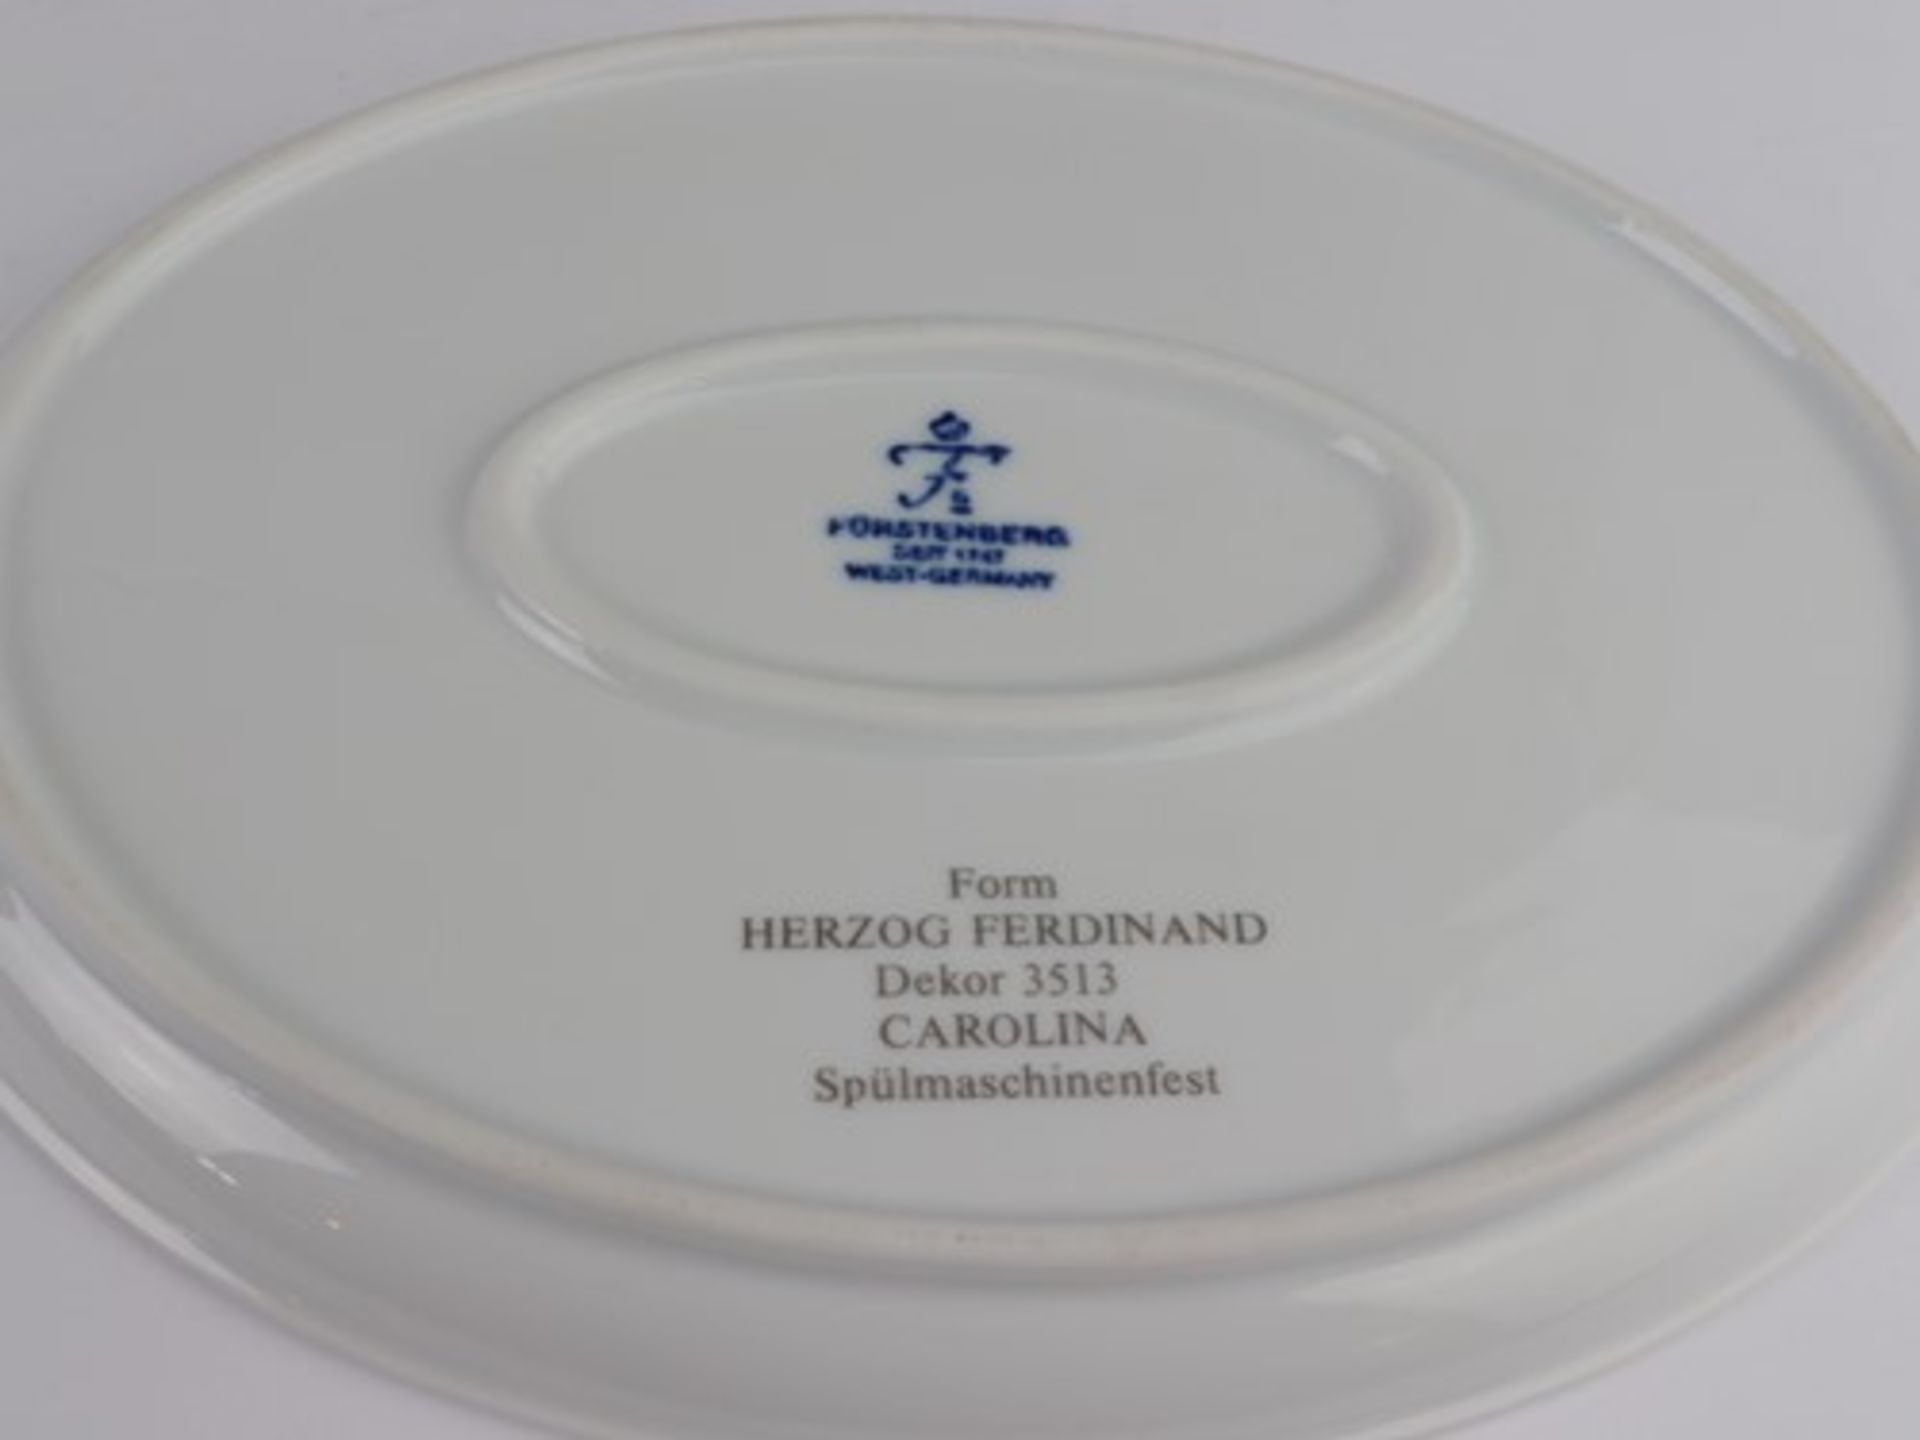 Fürstenberg - Tee-/Kaffeeserviceblaue Marken, Form Herzog Ferdinand, Dekor 3513 Carolina, - Bild 2 aus 5